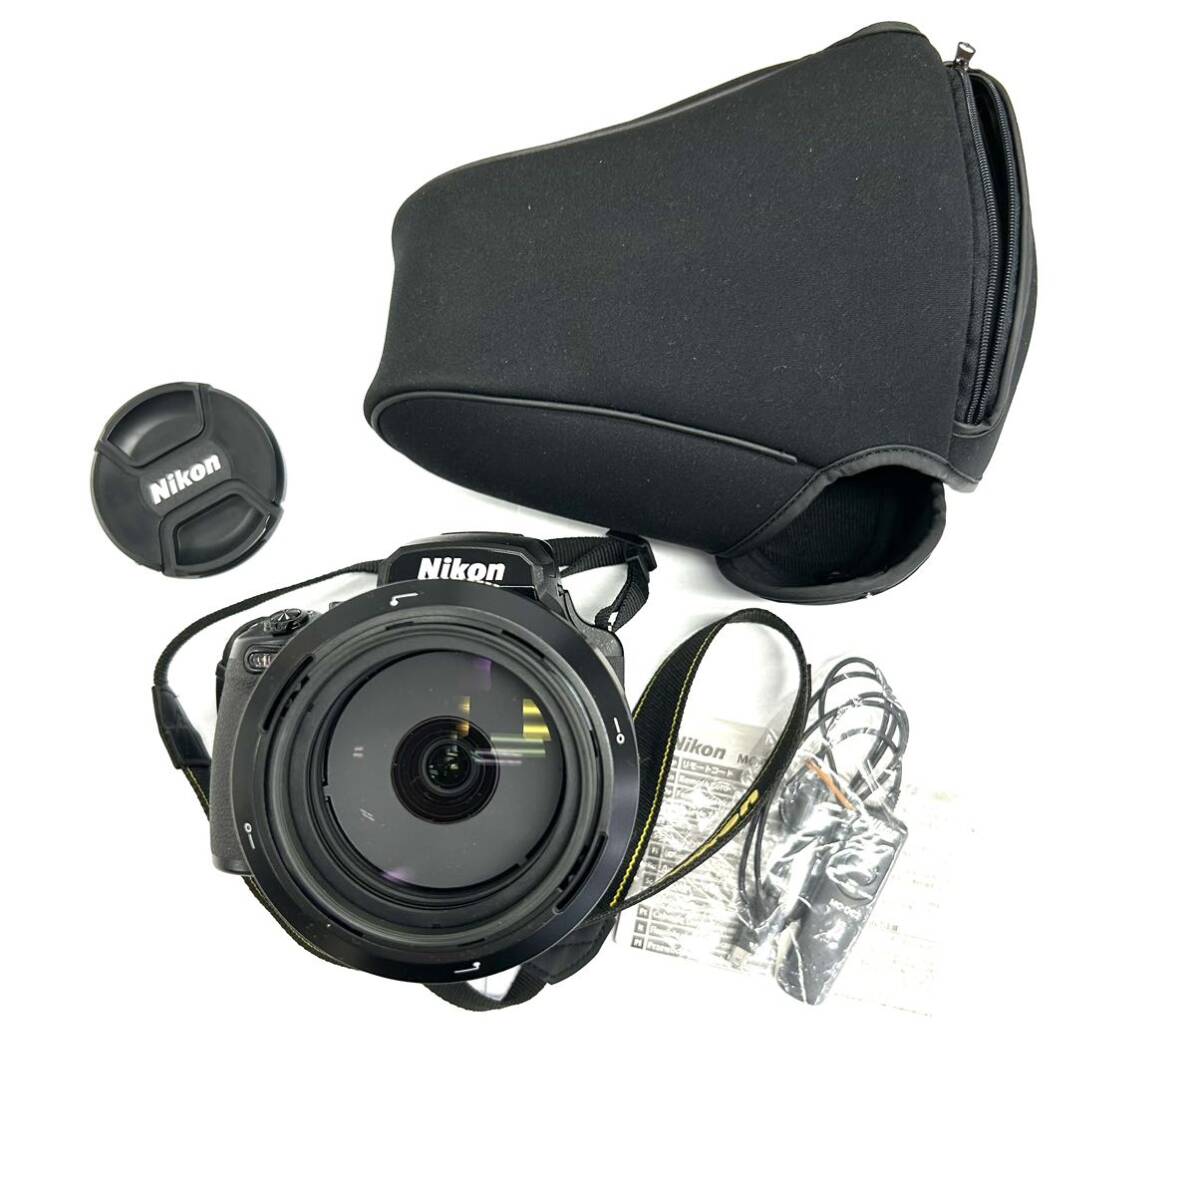 Y325 デジタルカメラ Nikon ニコン COOLPIX P1000 125X WIDE OPTICAL ZOOM ED VR 4.3-539mm 1:2.8-8 ジャンク品 中古 訳あり_画像1